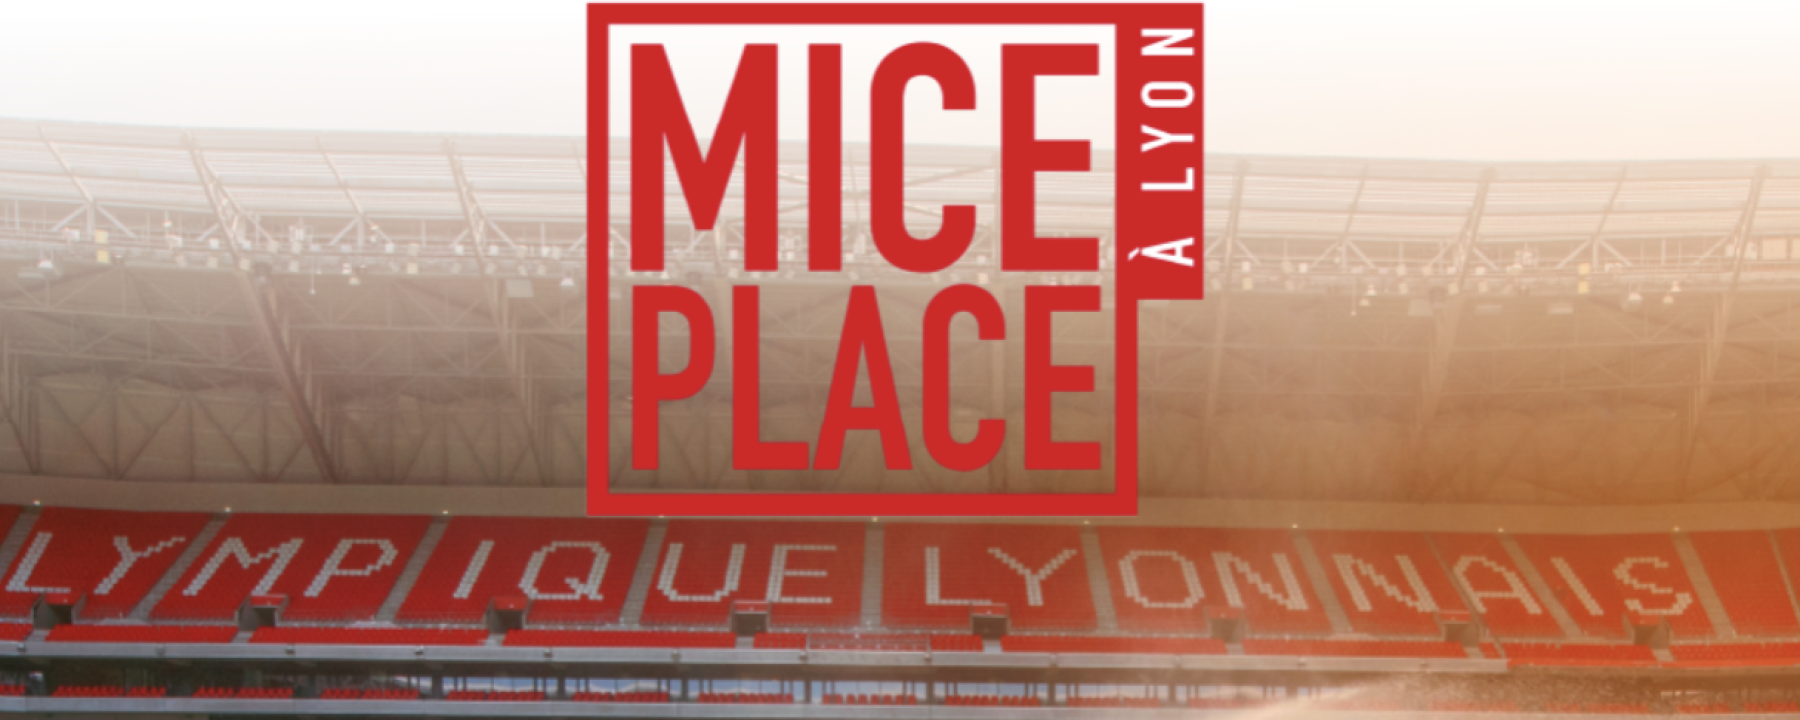 MICE PLACE Lyon